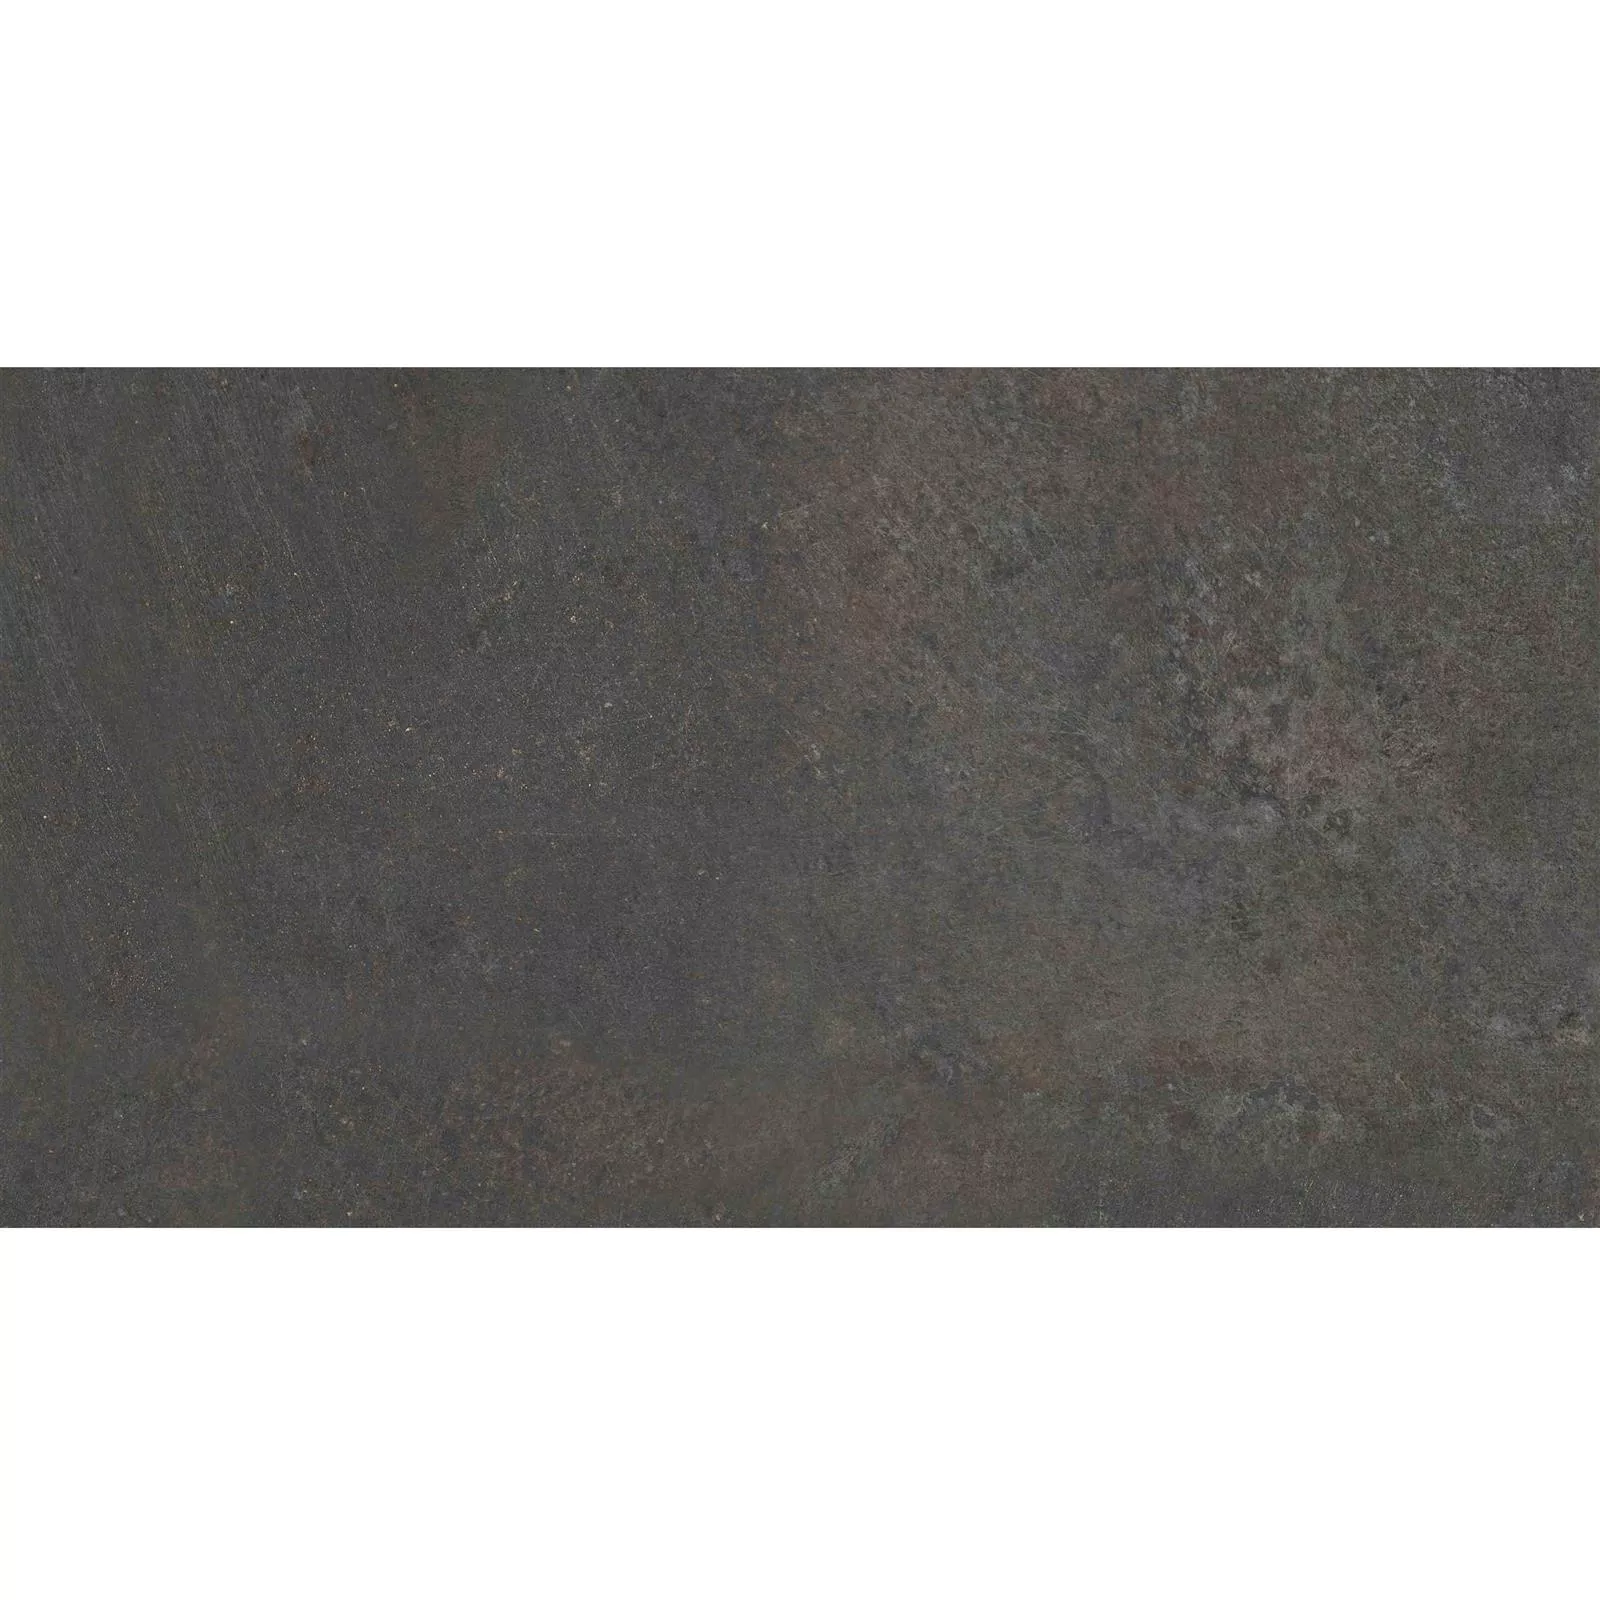 Vzorek Podlahové Dlaždice Peaceway Antracitová 30x60cm